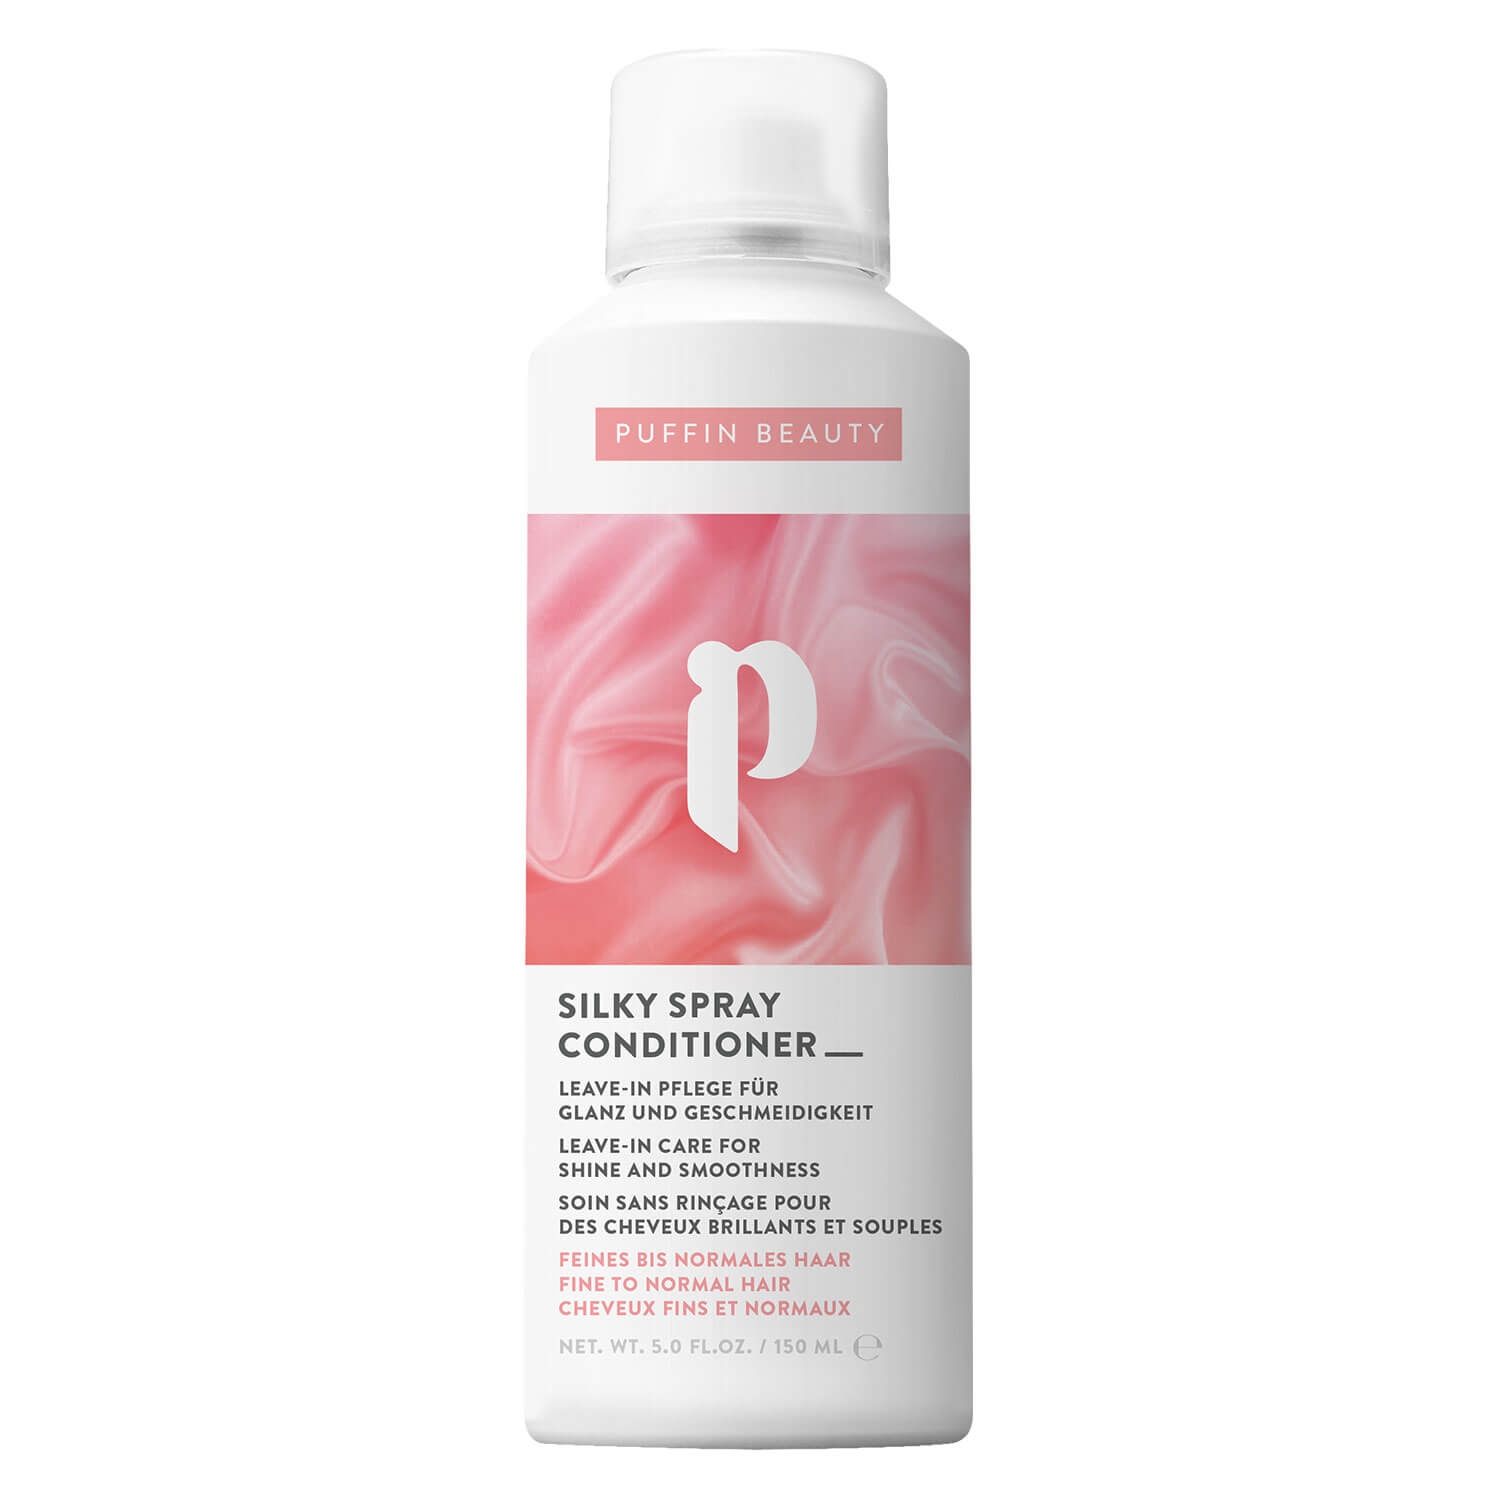 Produktbild von Puffin Beauty Care - Silky Spray Conditioner